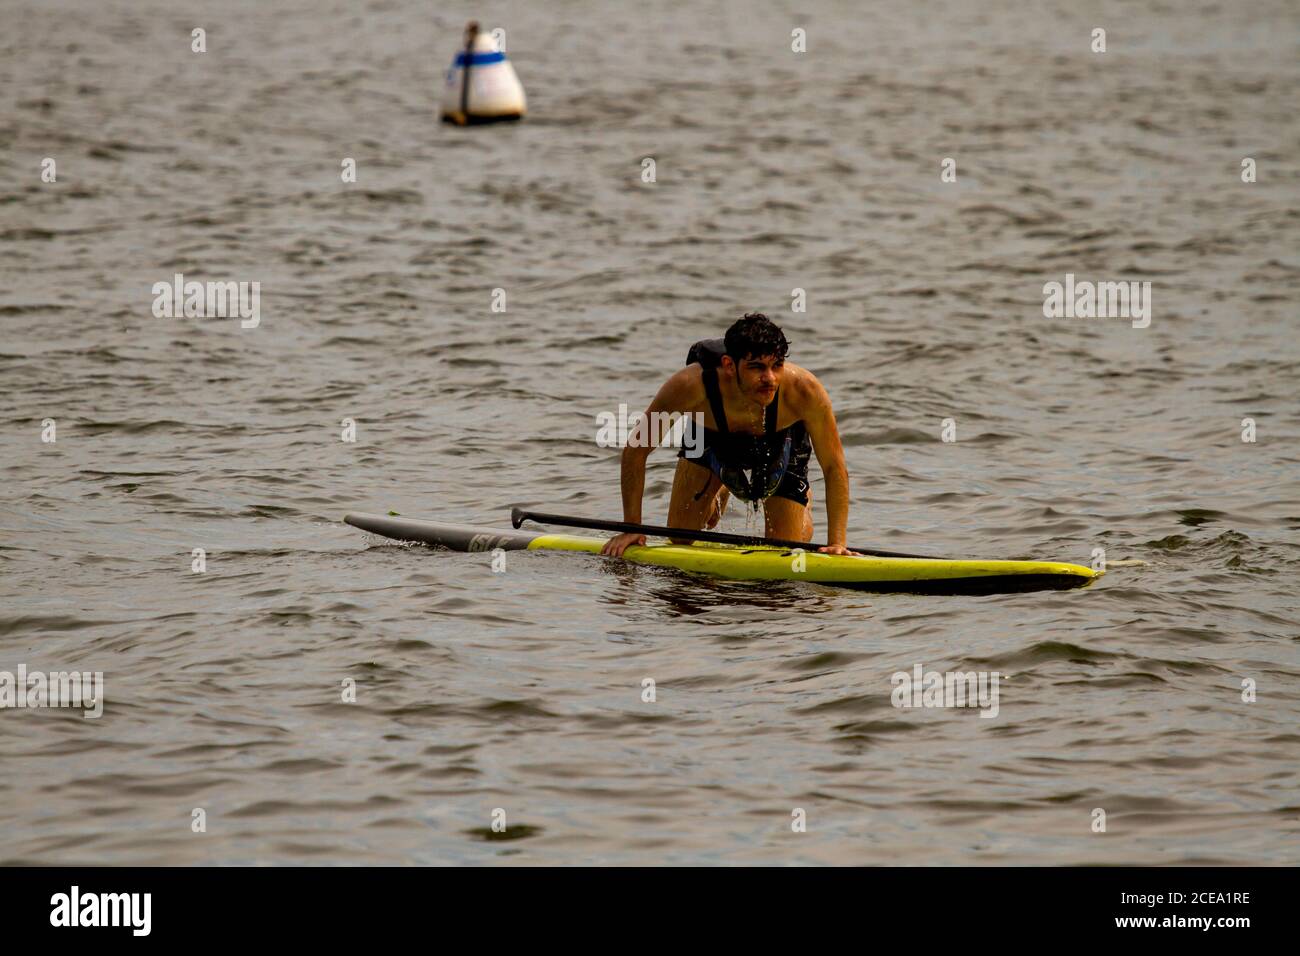 Annapolis, MD 08/21/2020: Un giovane kayak inesperto sta cercando di risalire al suo stand up kayak dopo aver perso il suo equilibrio e cadendo in wat Foto Stock